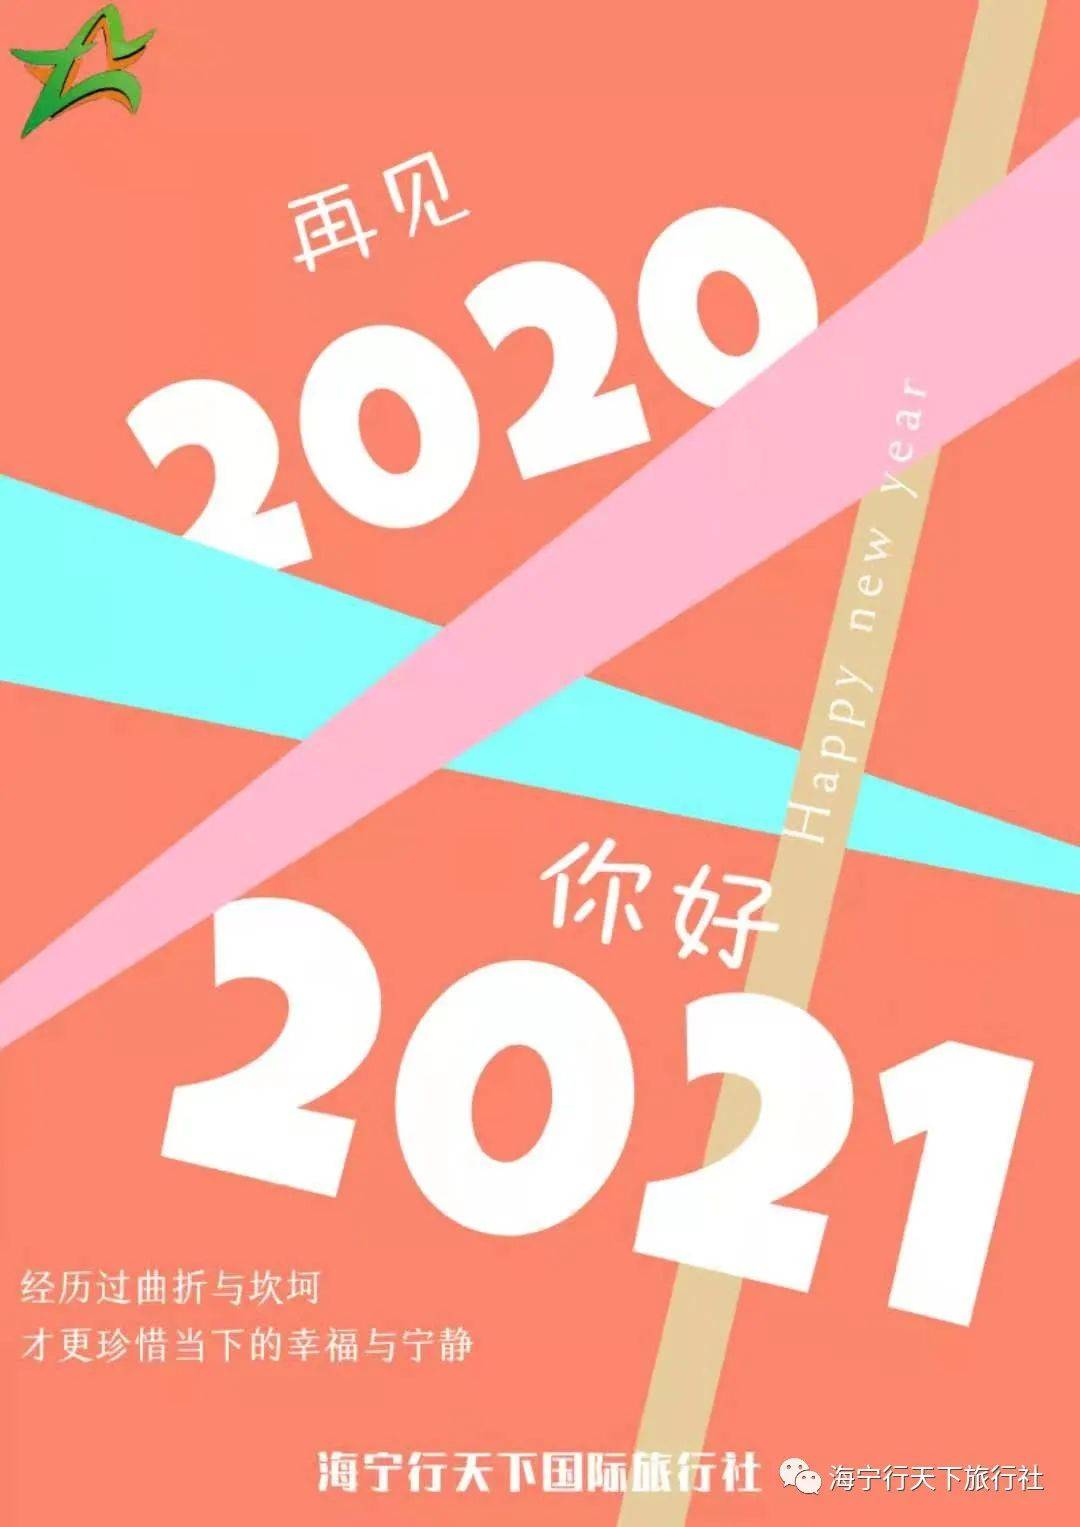 再见2020你好2021海报图片